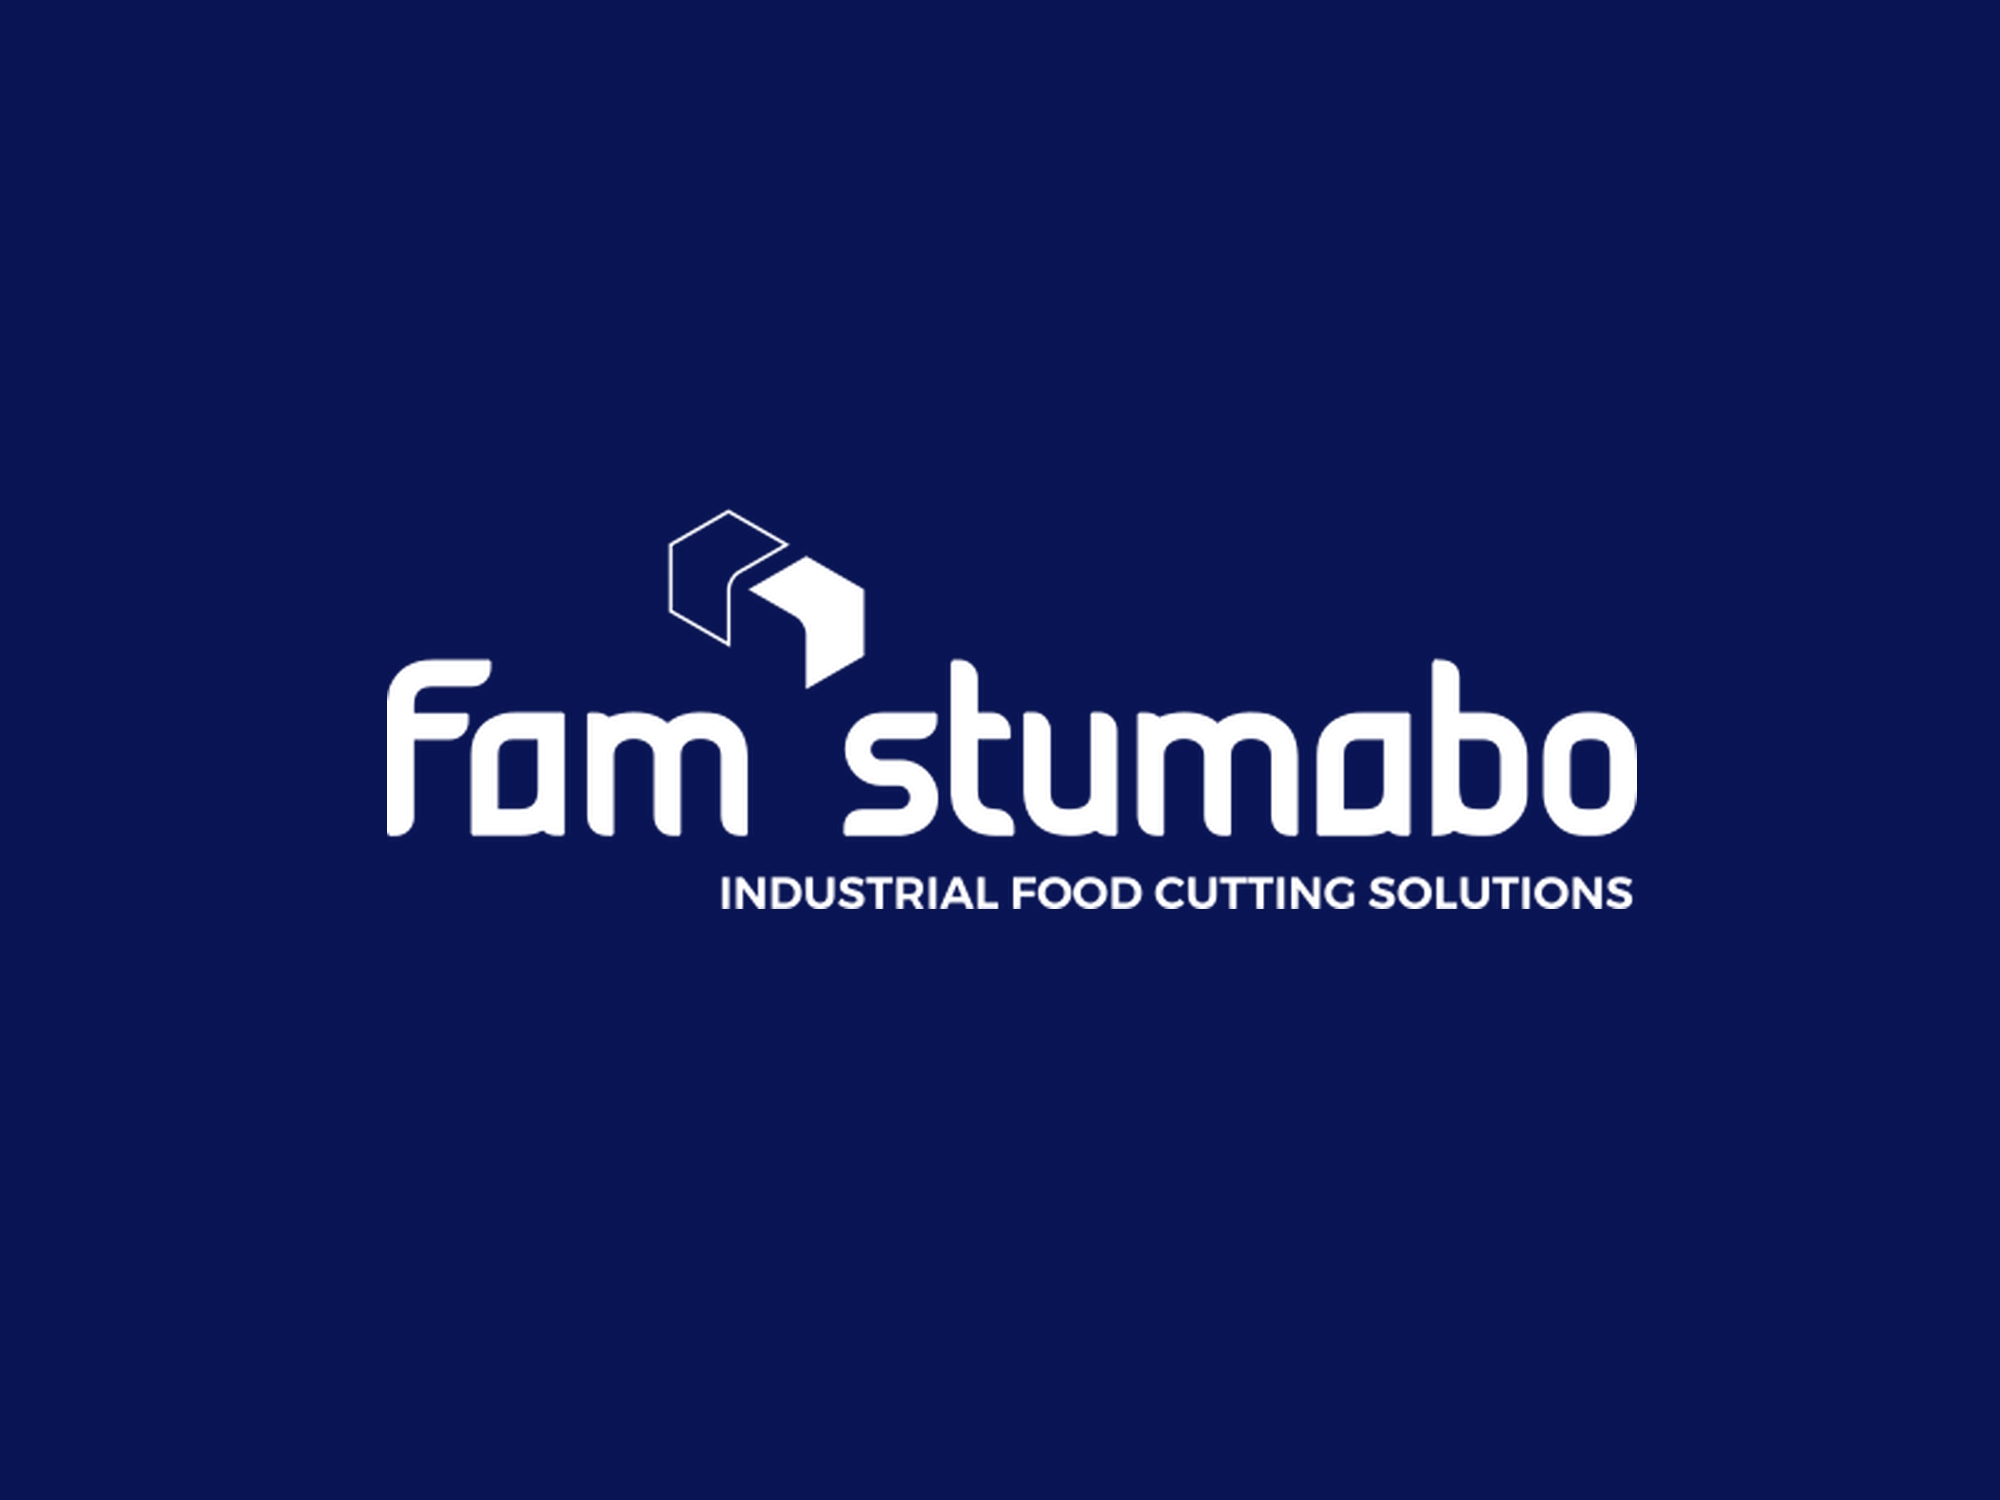 Fam Stumabo